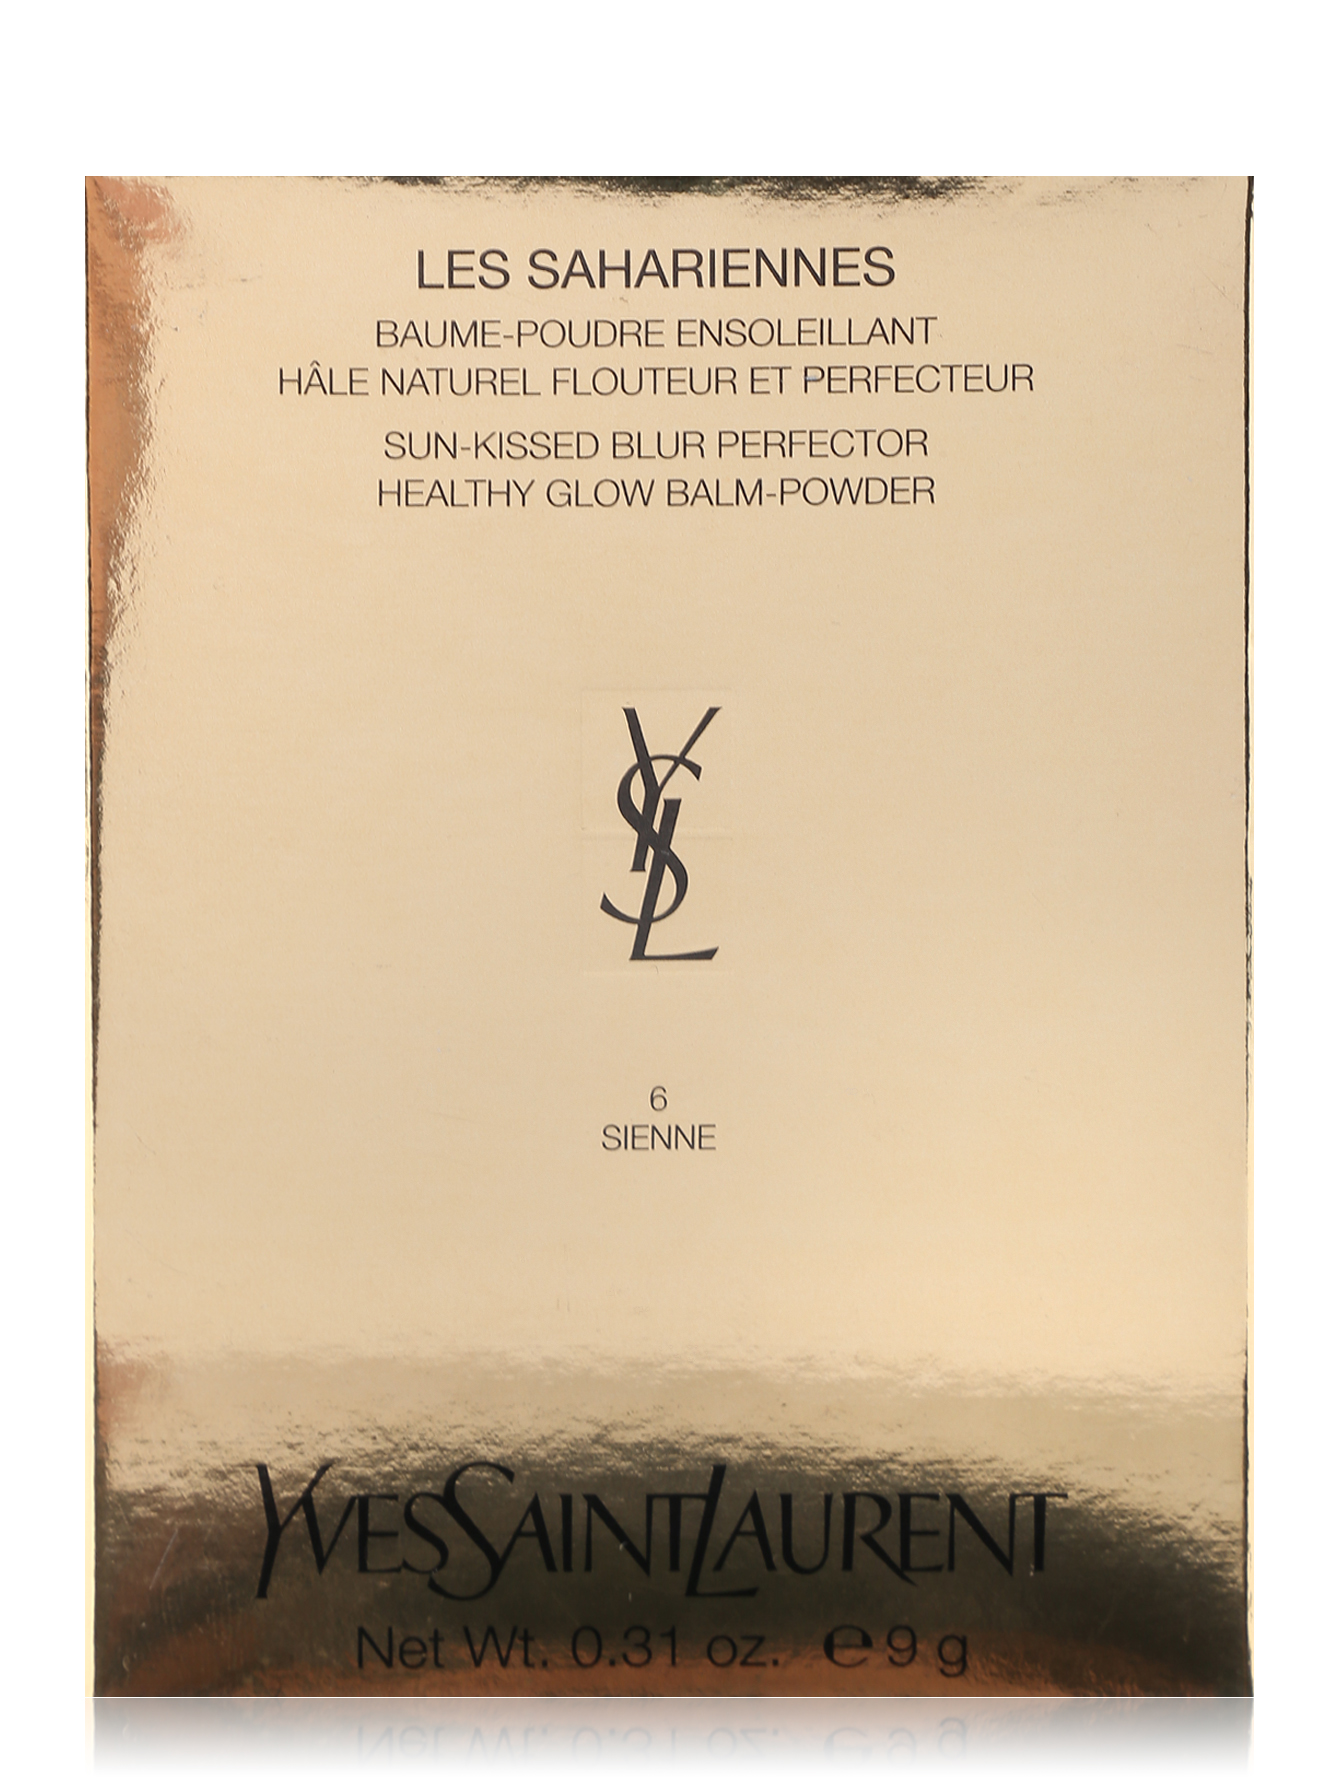  Пудра в бальзаме - №06, Les Sahariennes Baume-poudre ensoleillant - Обтравка1